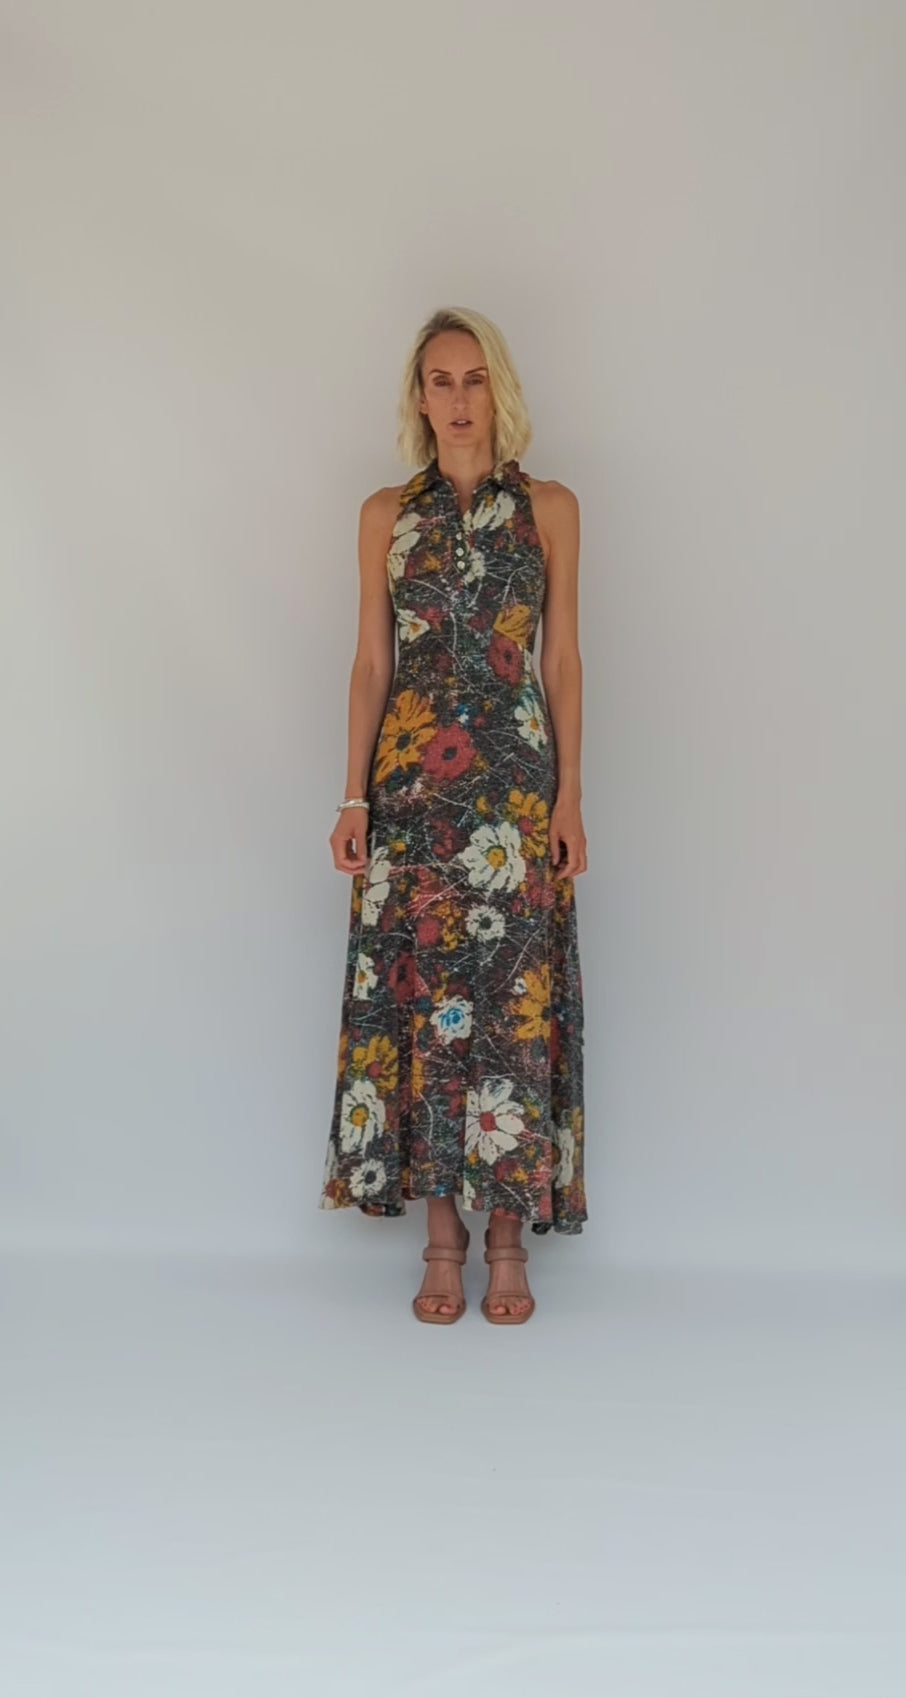 Floral patterned long dress